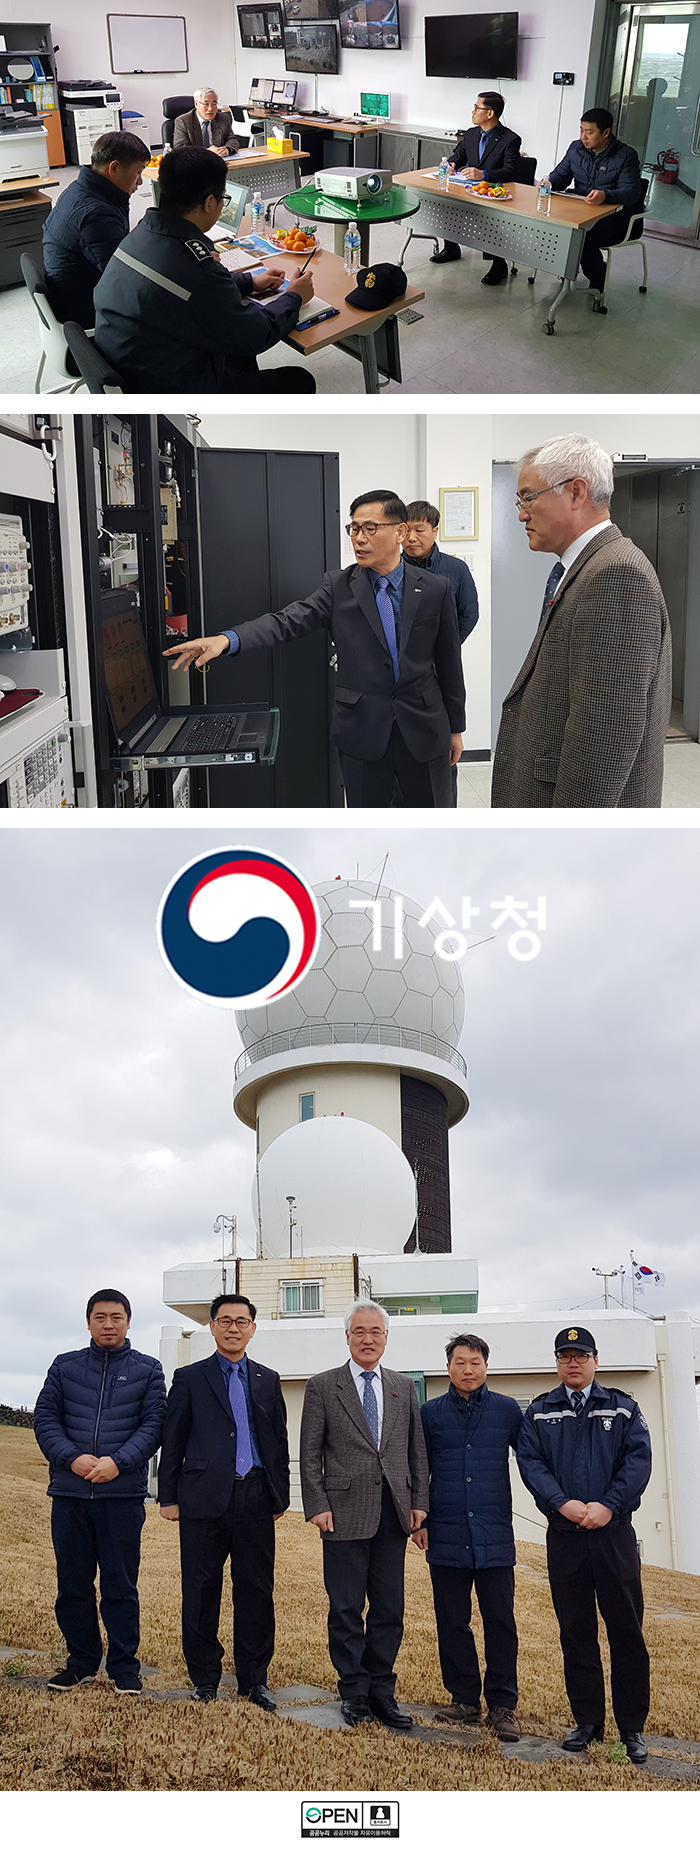 고산기상레이더관측소를 점검하는 김종석 기상청장의 모습